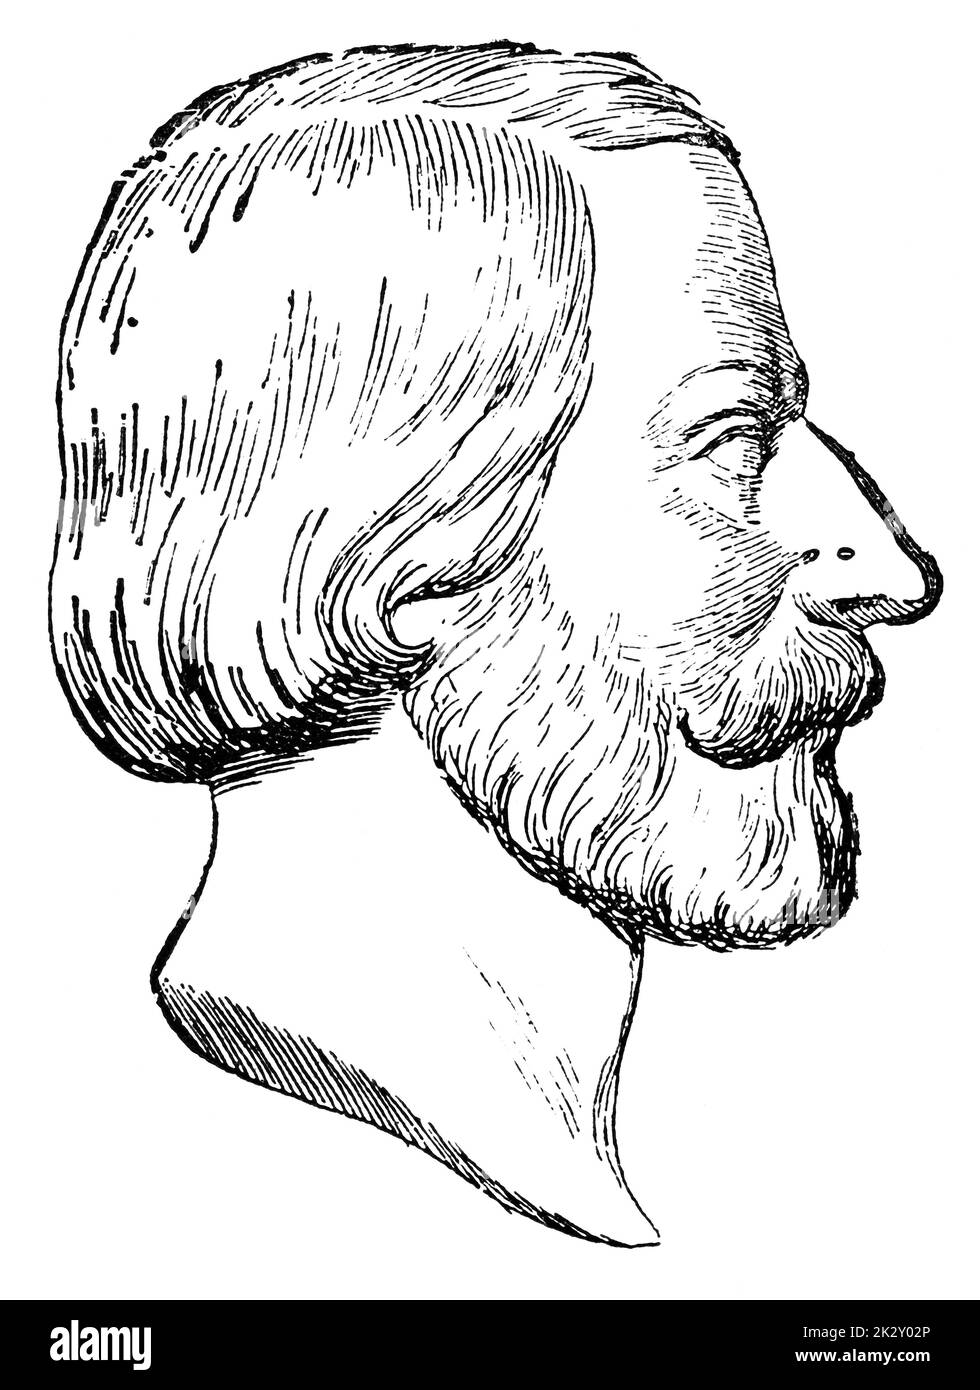 Portrait d'Adolf von Hildebrand - un sculpteur allemand. Illustration du 19e siècle. Arrière-plan blanc. Banque D'Images